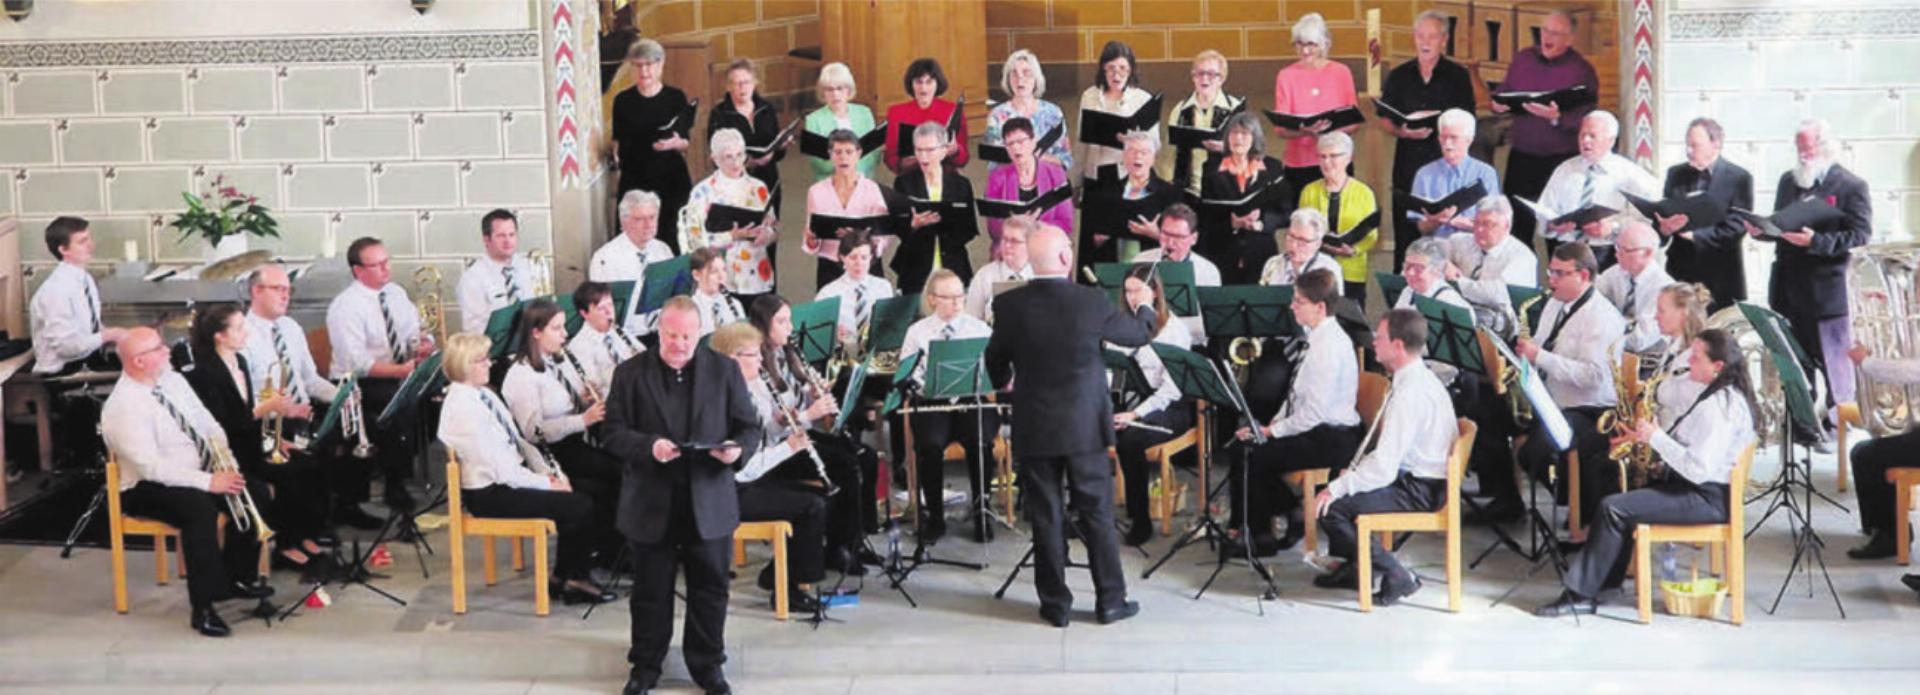 Das gemeinsame Kirchenkonzert der Harmonie und des Kirchenchors Berikon fand grossen Anklang. Bild: zg